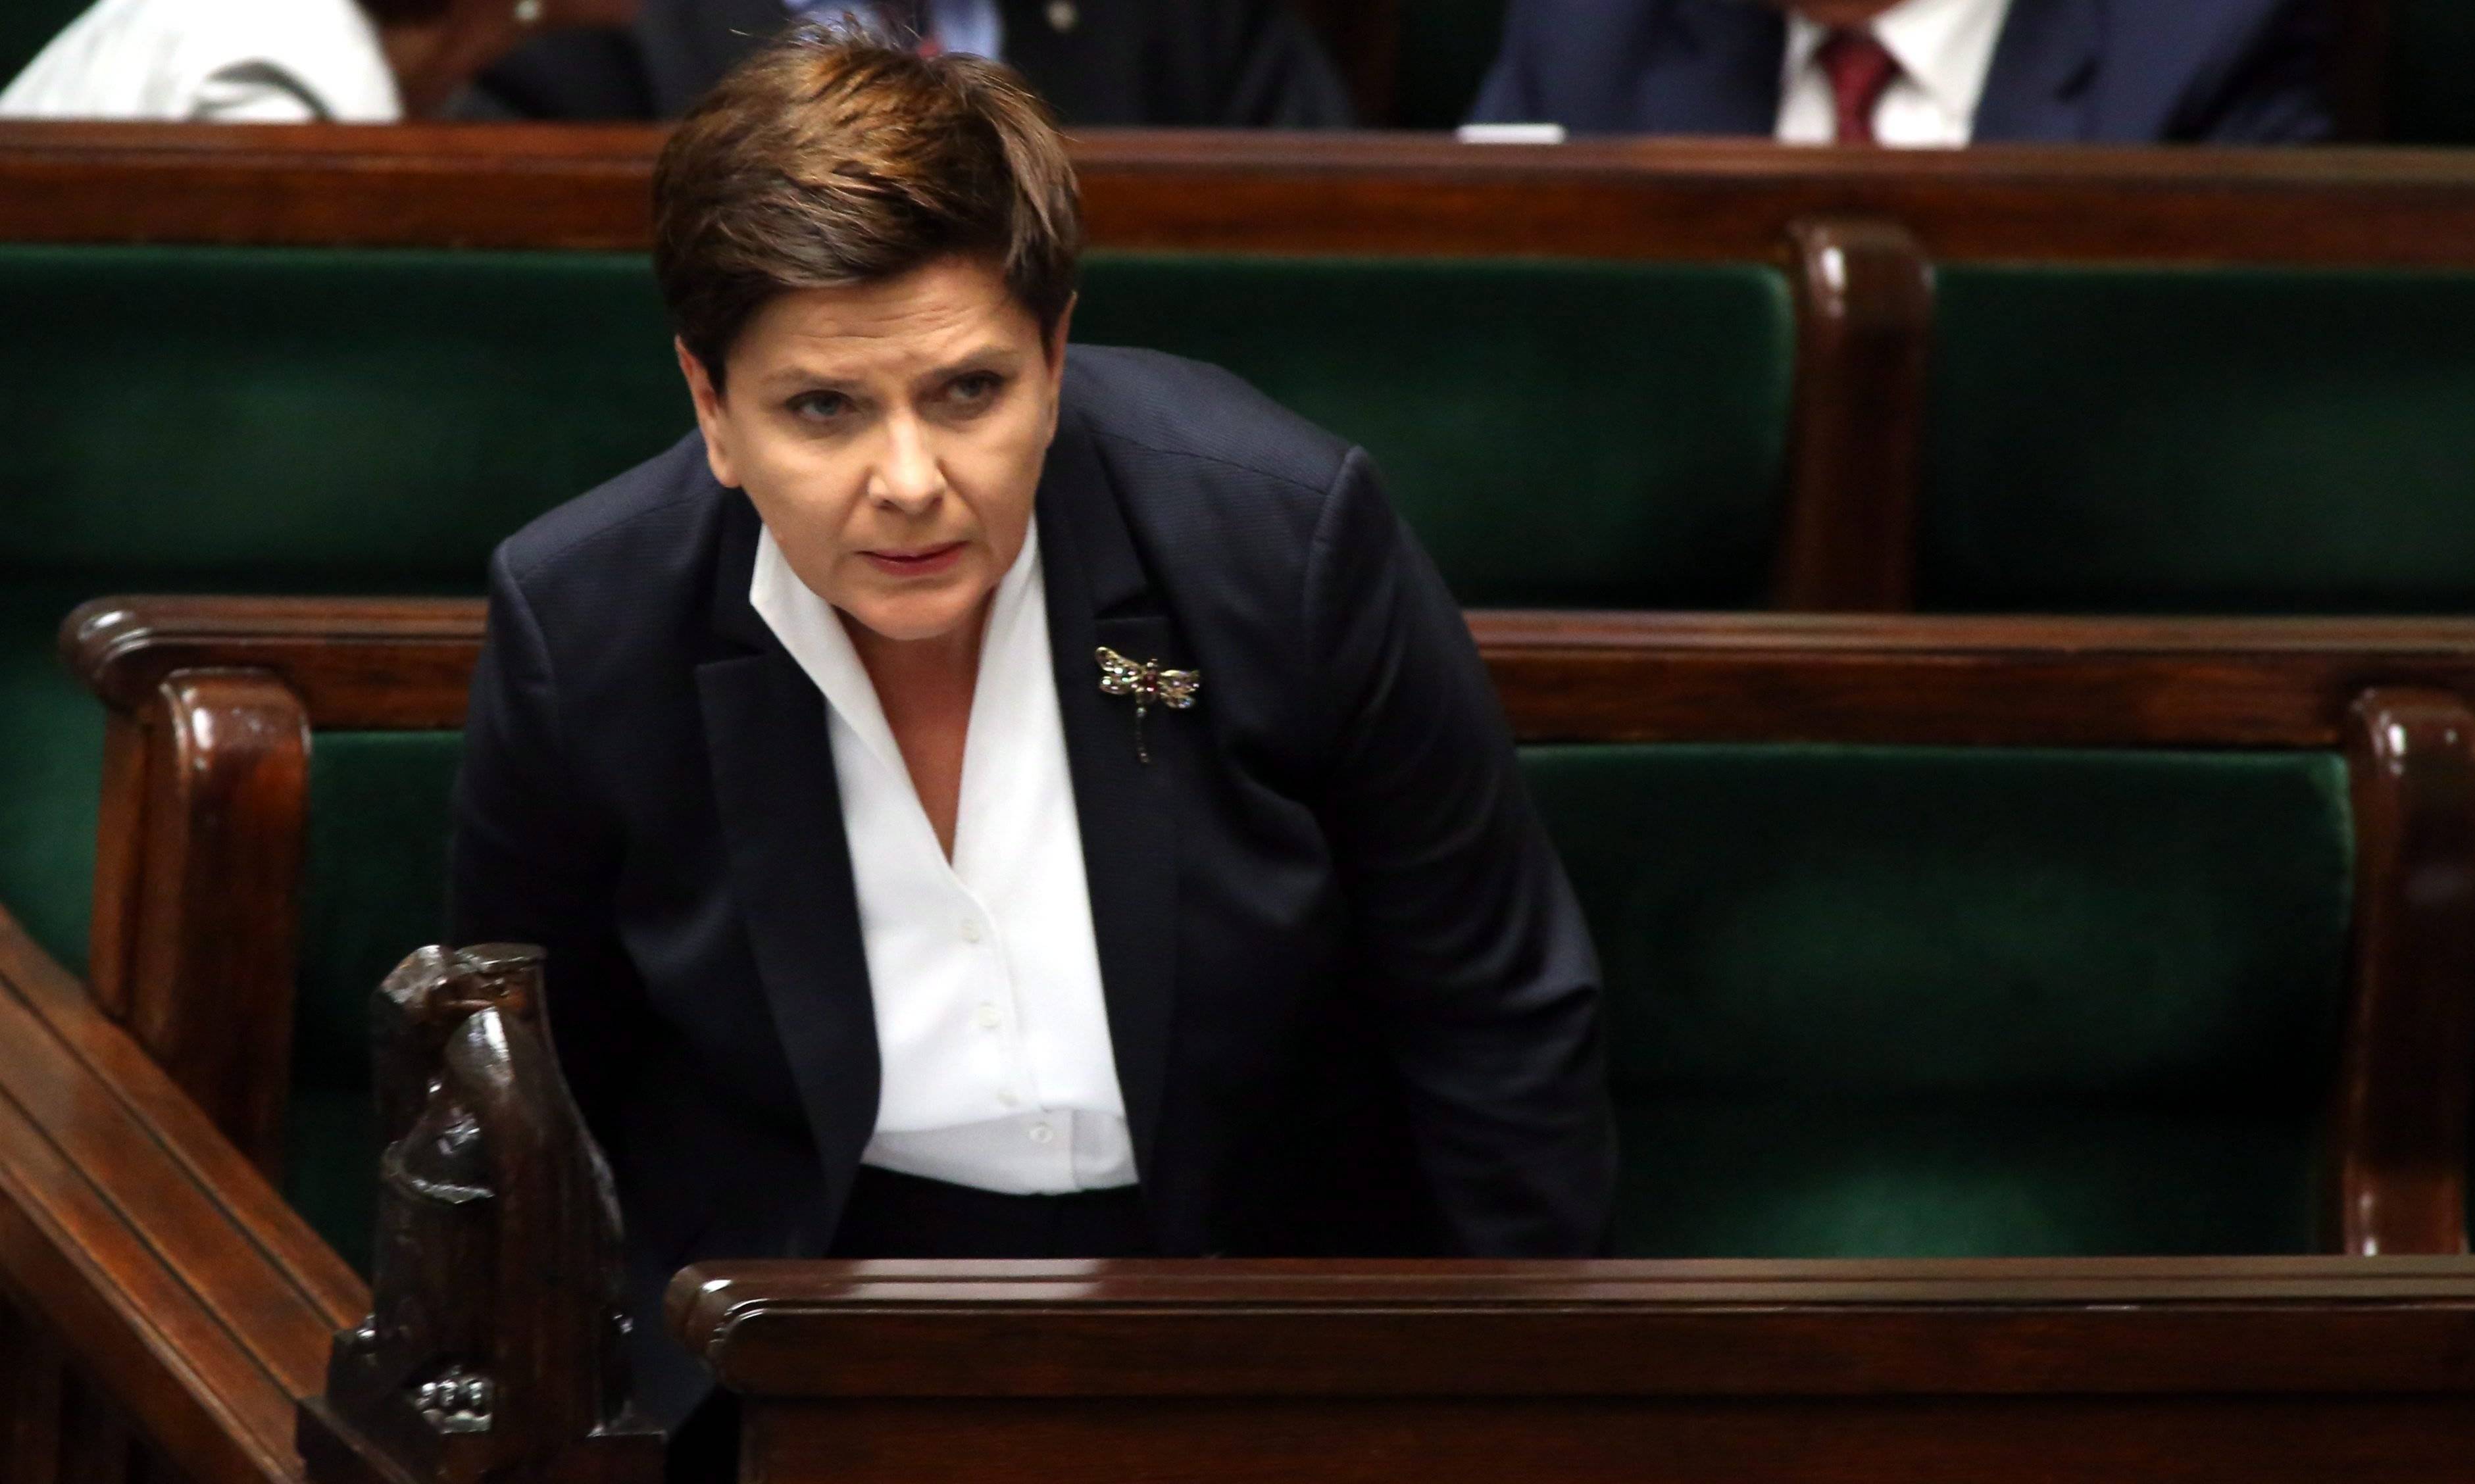 23.09.2016 Warszawa , Sejm . Premier Beata Szydlo .
Fot . Slawomir Kaminski / Agencja Gazeta